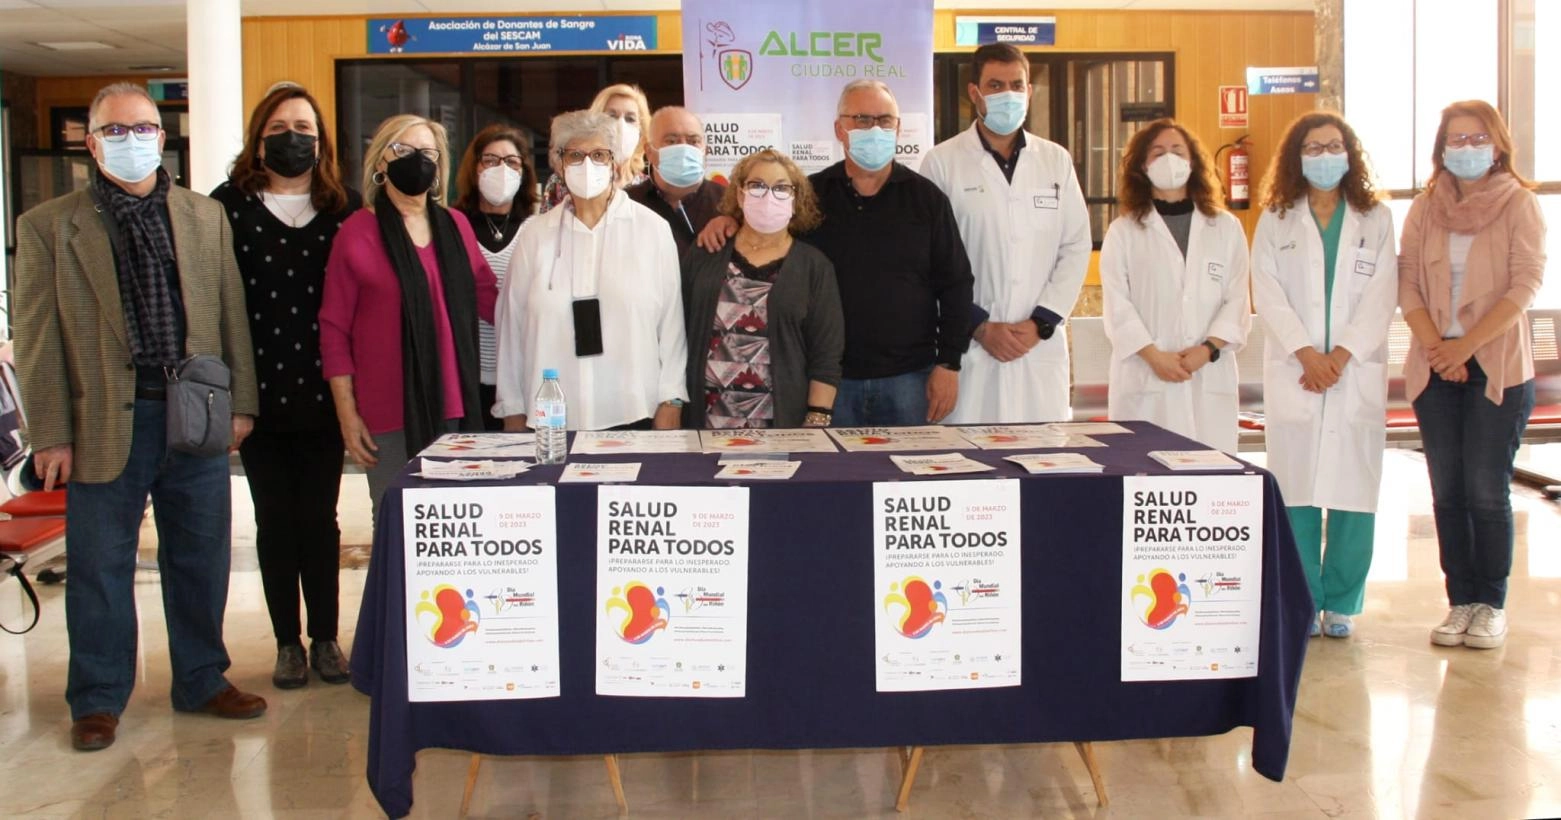 Imagen del artículo La Gerencia de Alcázar de San Juan y la asociación ALCER unen esfuerzos para concienciar y sensibilizar sobre las enfermedades renales